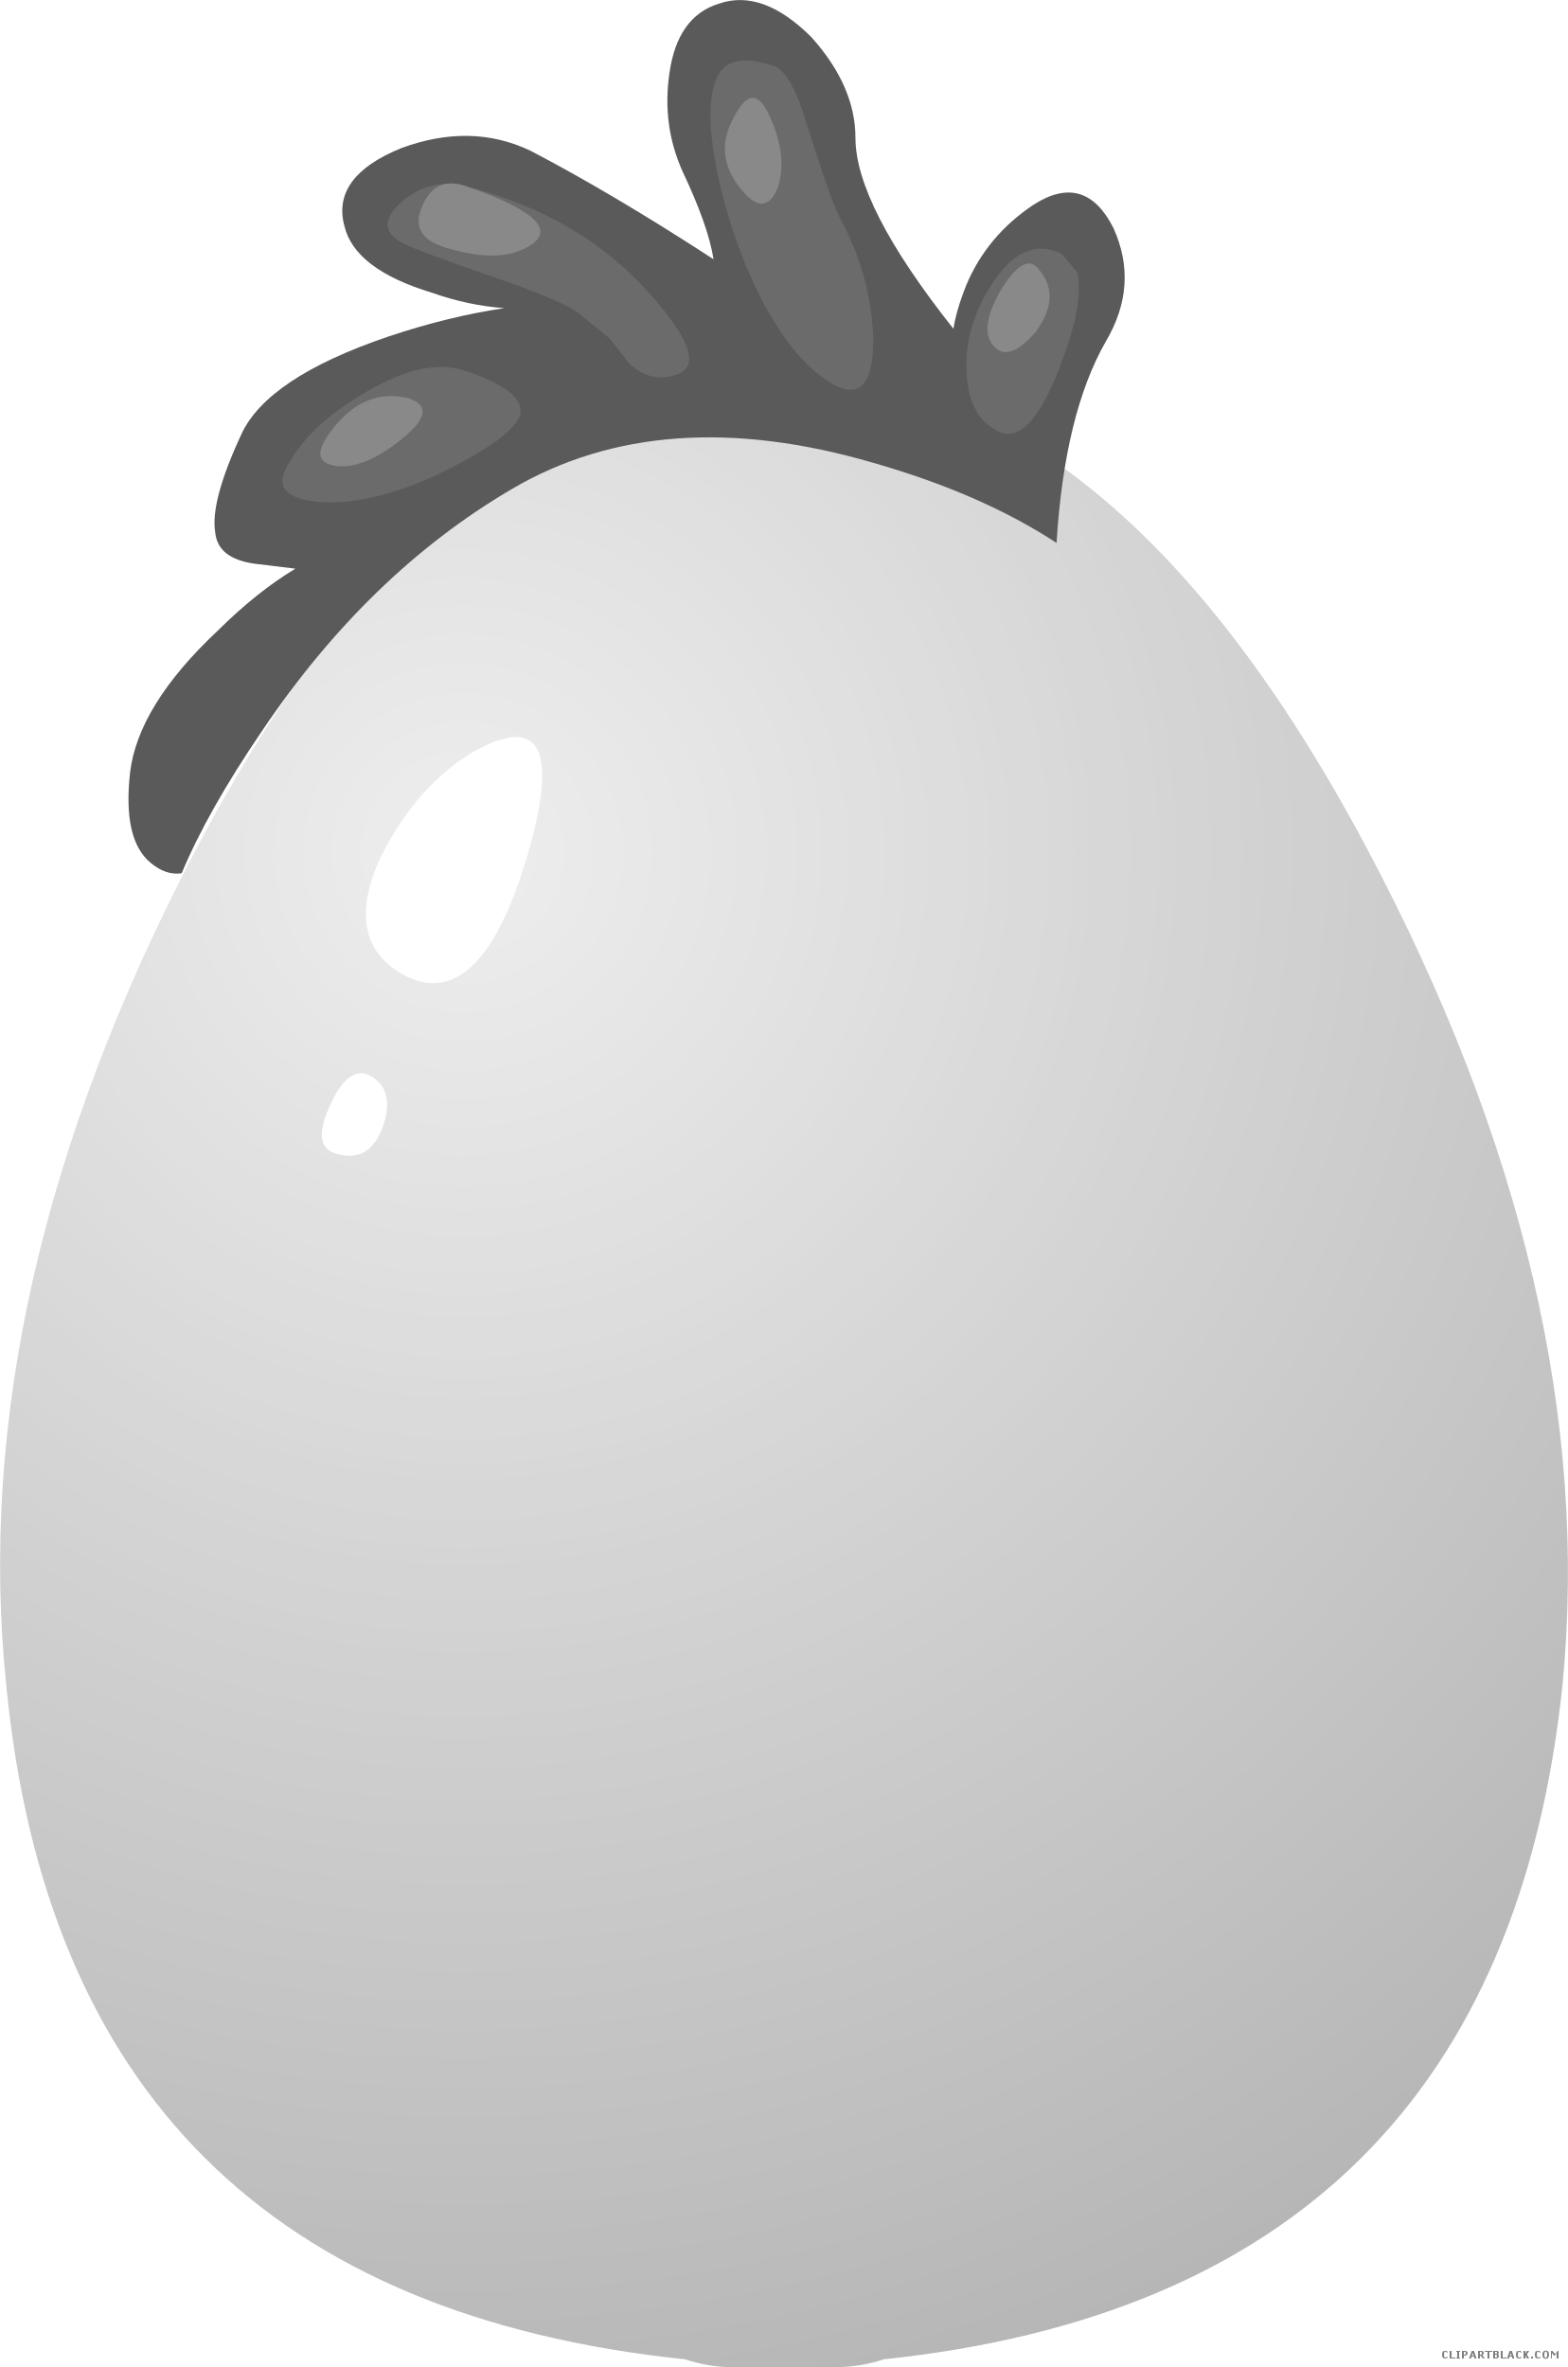 egg clipart black and white